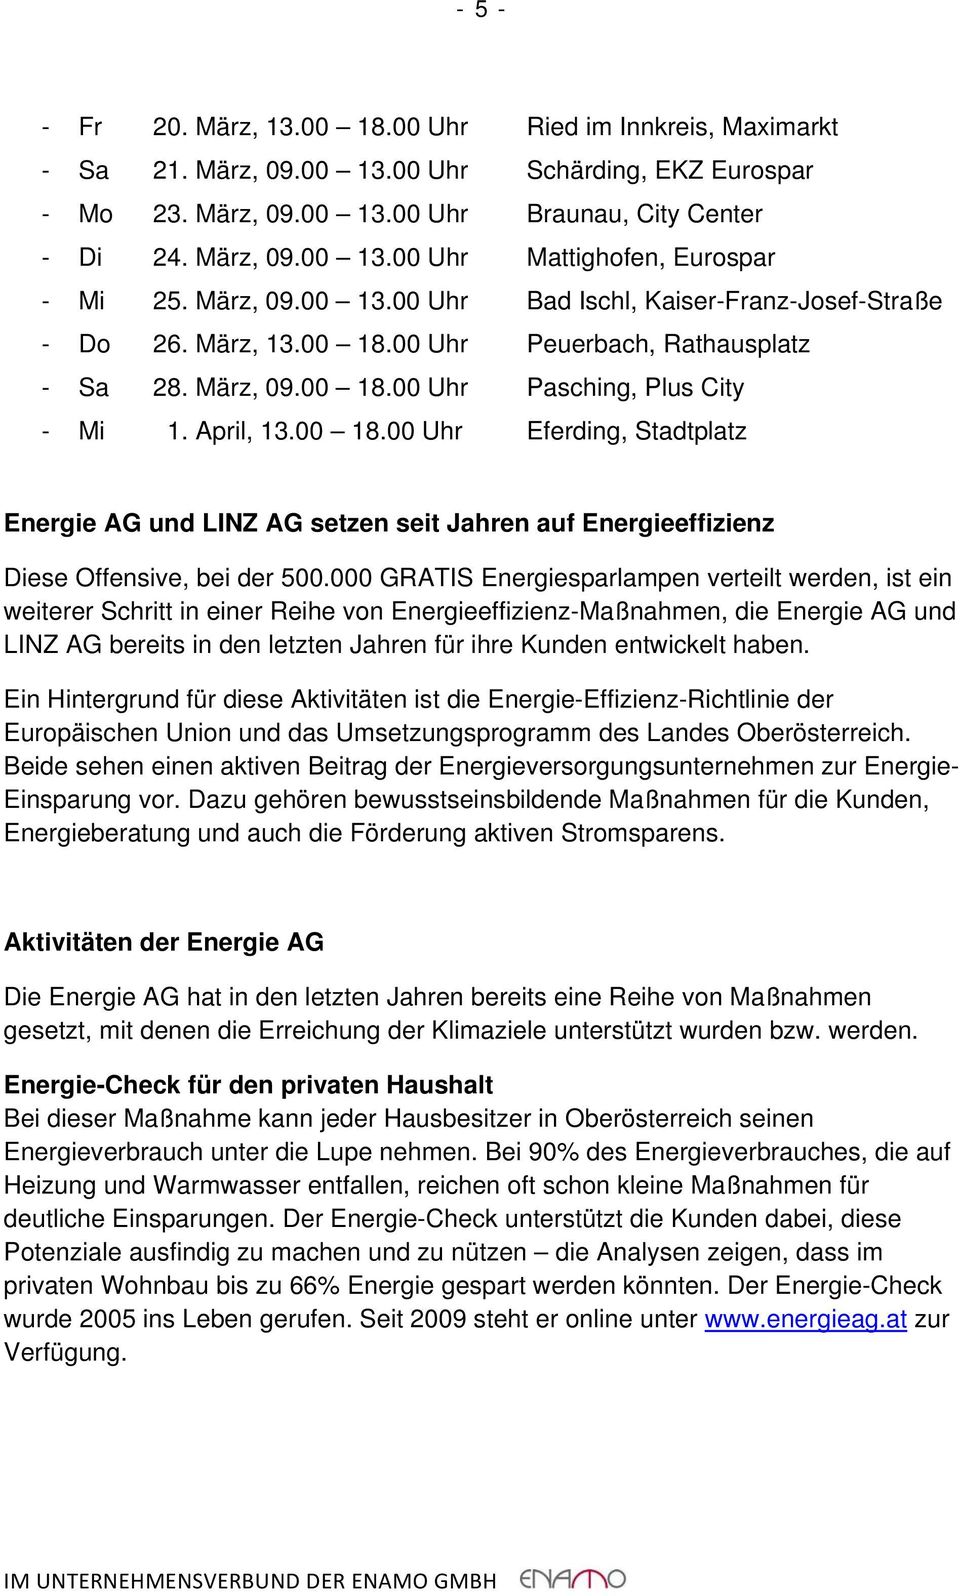 00 Uhr Peuerbach, Rathausplatz - Sa 28. März, 09.00 18.00 Uhr Pasching, Plus City - Mi 1. April, 13.00 18.00 Uhr Eferding, Stadtplatz Energie AG und LINZ AG setzen seit Jahren auf Energieeffizienz Diese Offensive, bei der 500.